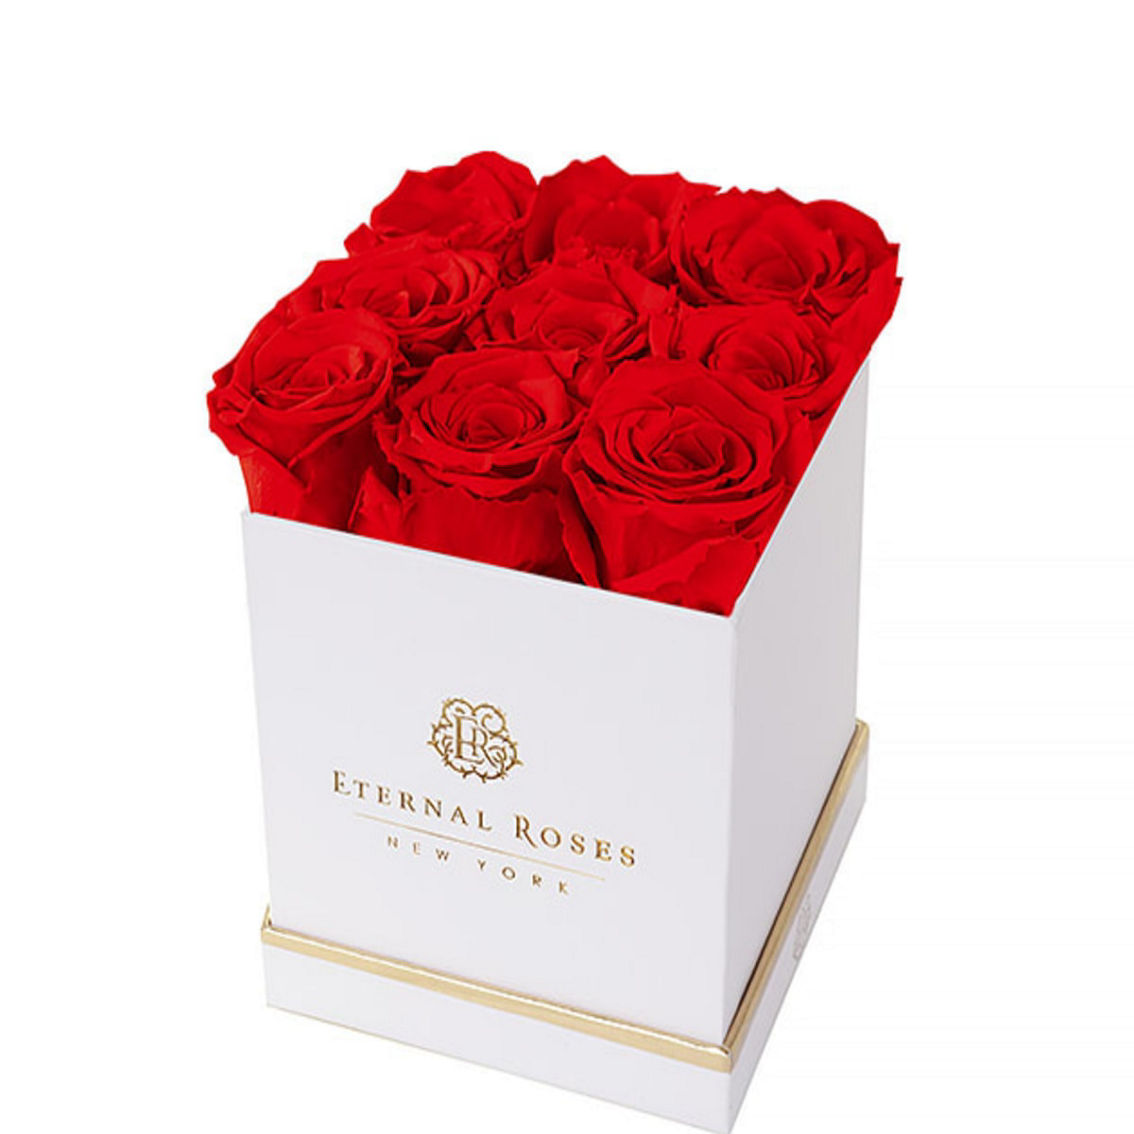 Eternal Roses Lennox 16 Rose Gift Box, White - Friendship Yellow - Image 2 of 2